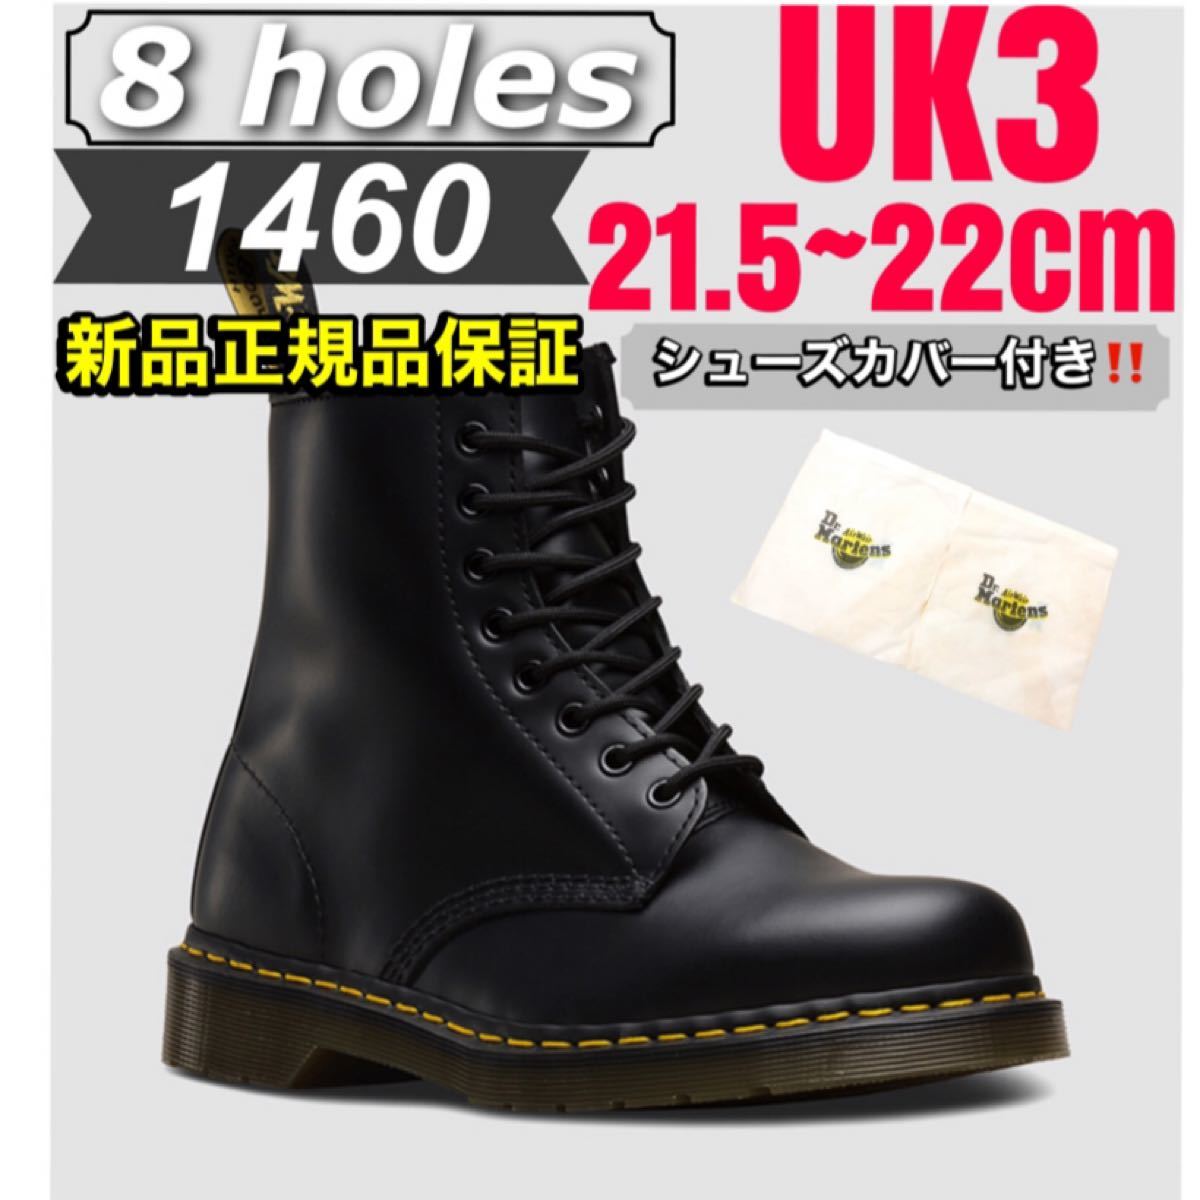 SALE／37%OFF】 Dr.Martens 【 】22cm(UK3)✨極美品✨8ホール 黒 厚底ブーツ - ブーツ - alrc.asia